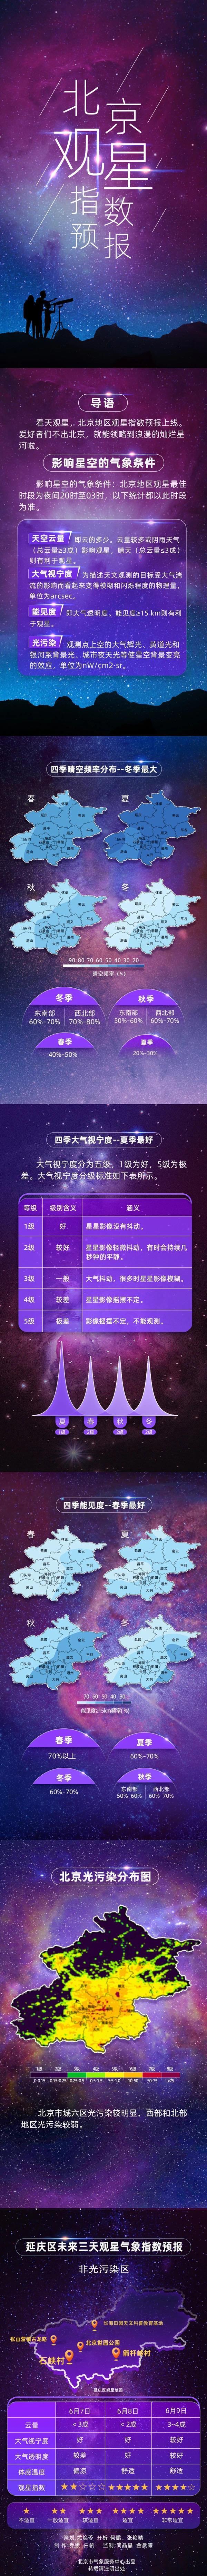 北京首次推出星空指数预报 朝霞晚霞也将有“数”可循